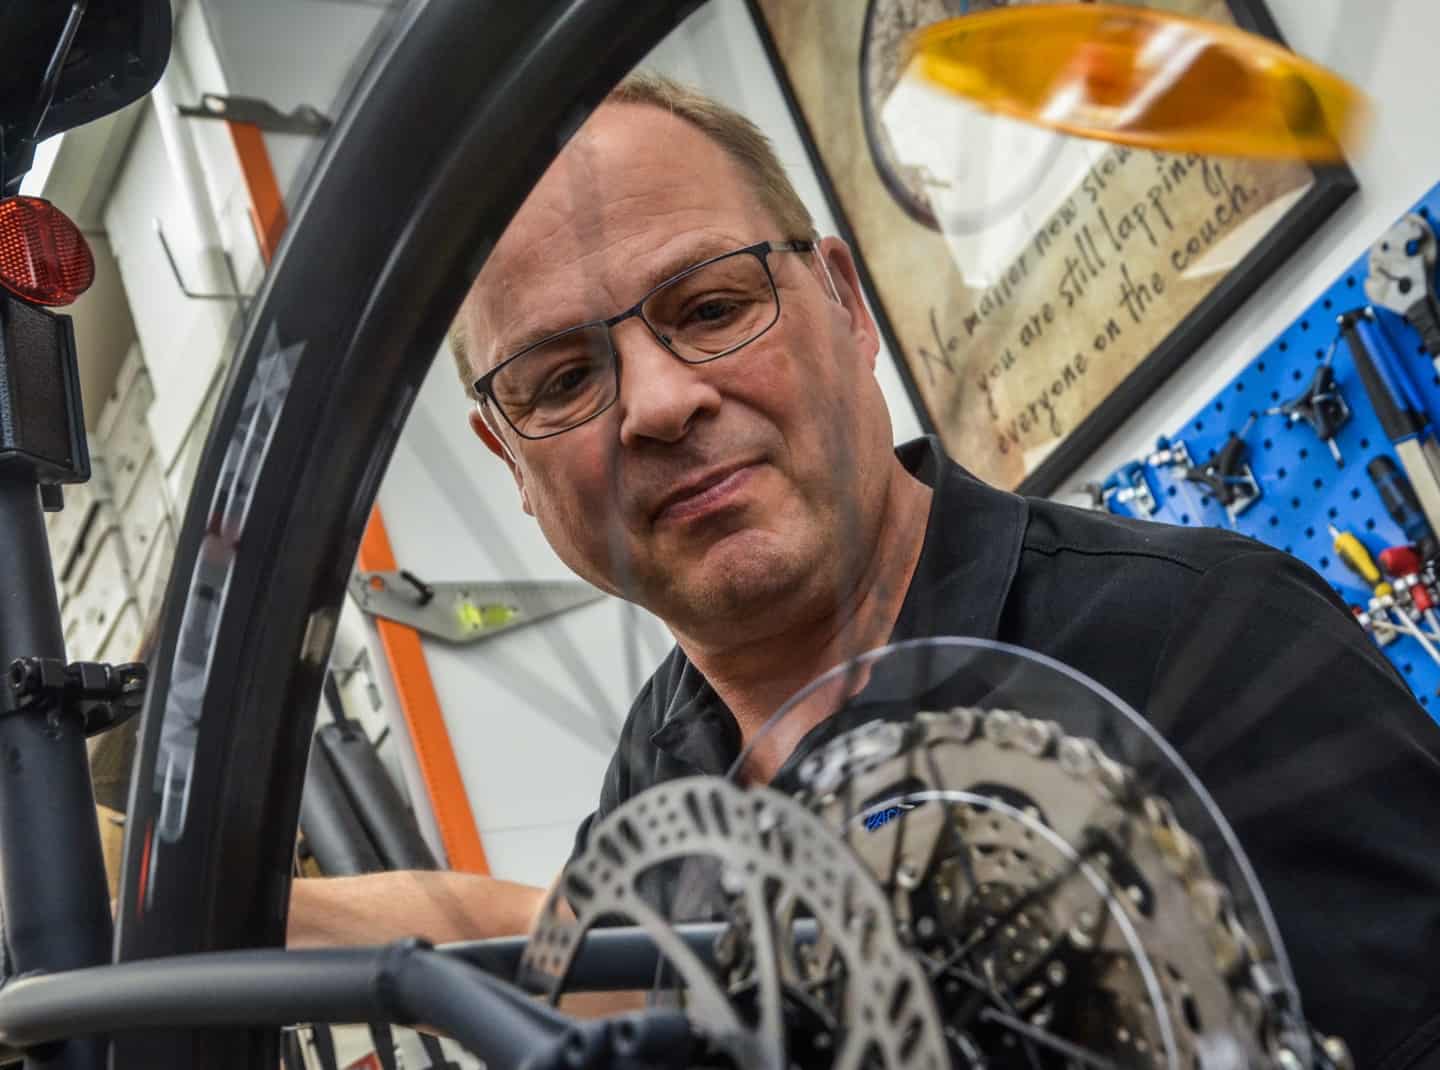 Peter solgte en cykel, der blev hentet i helikopter: Et mødte også hinanden første gang hos Rask | stiften.dk